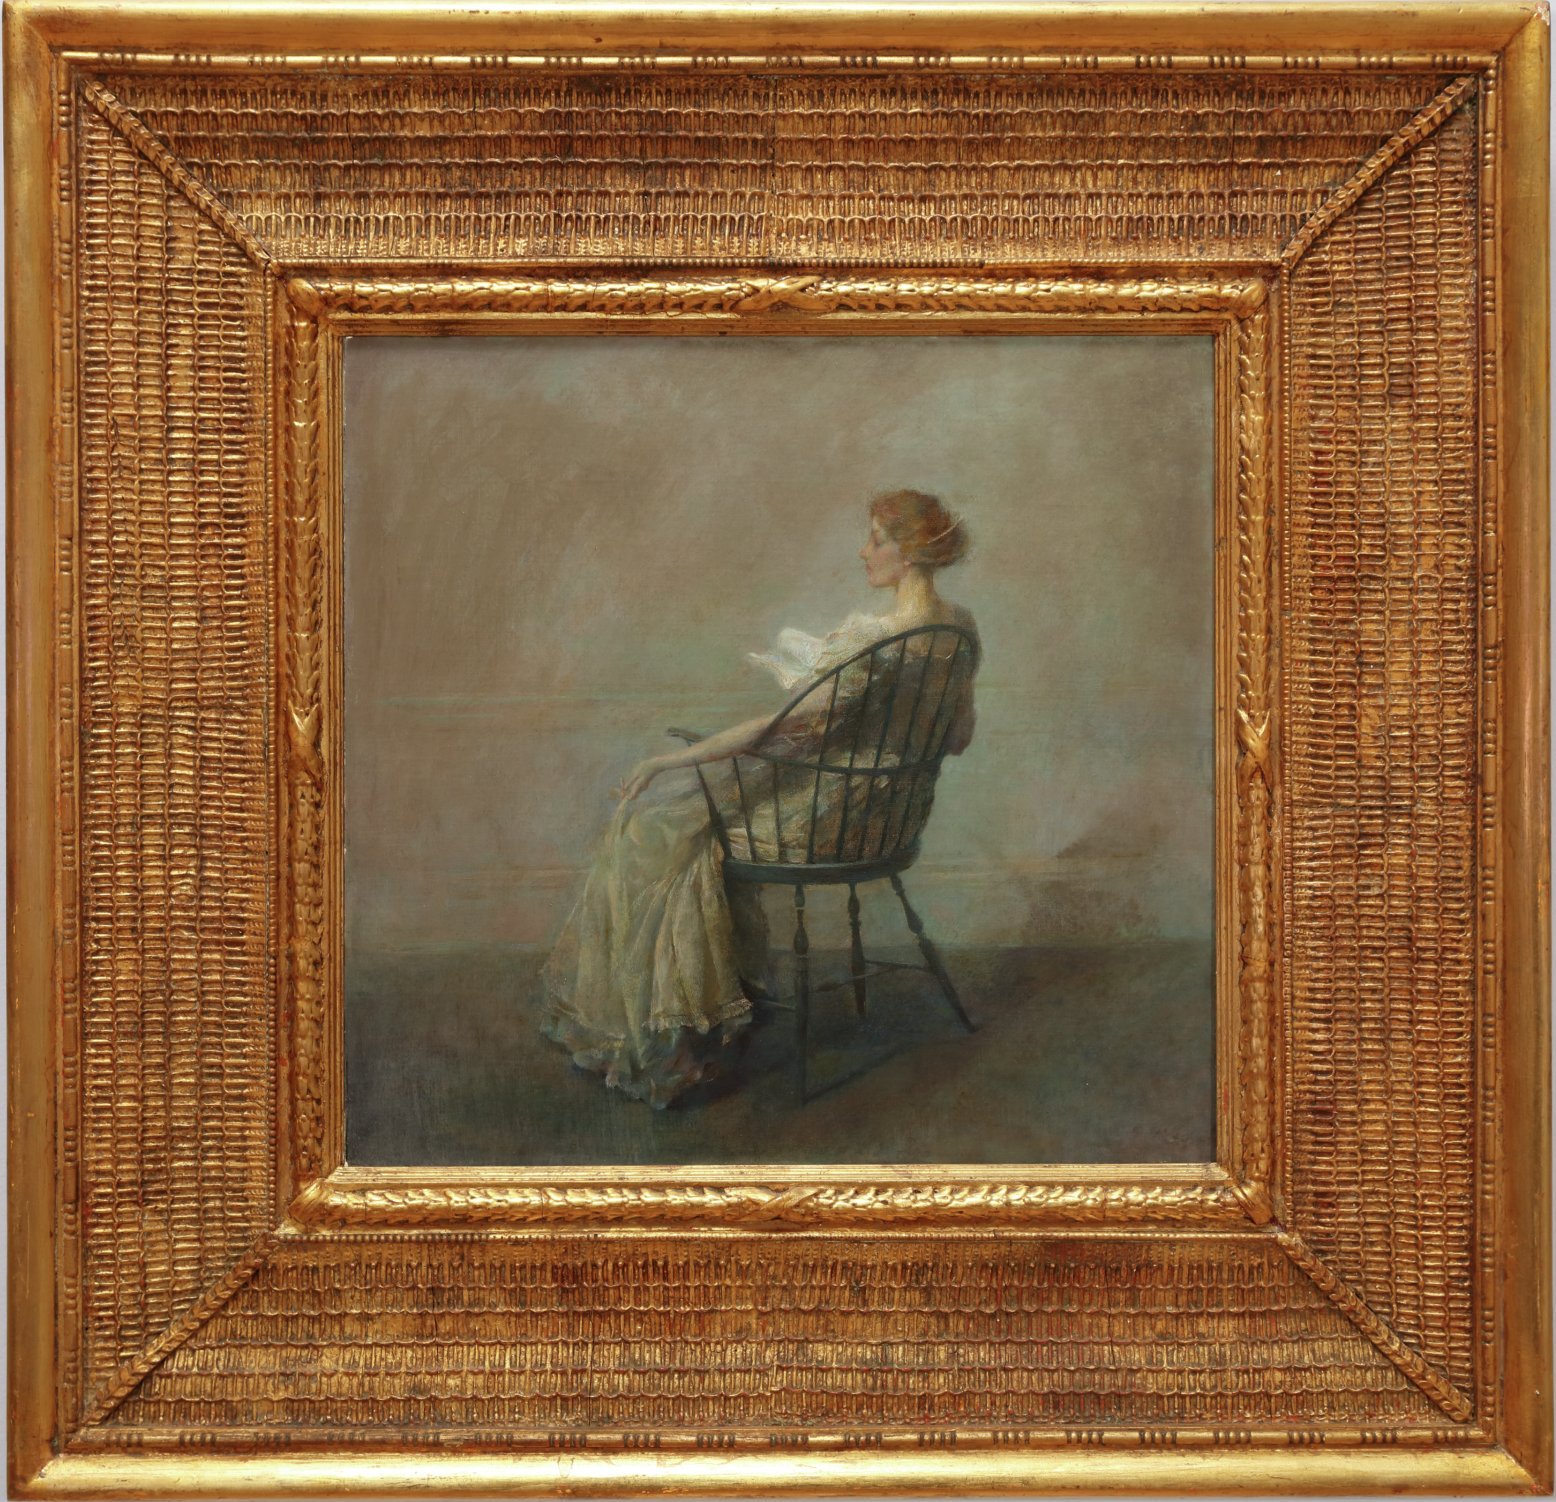 Az olvasás (vagy Nő egy windsori székben) by Thomas Wilmer Dewing - 1909 körül - 20 1/4 x 21 1/2 inches 